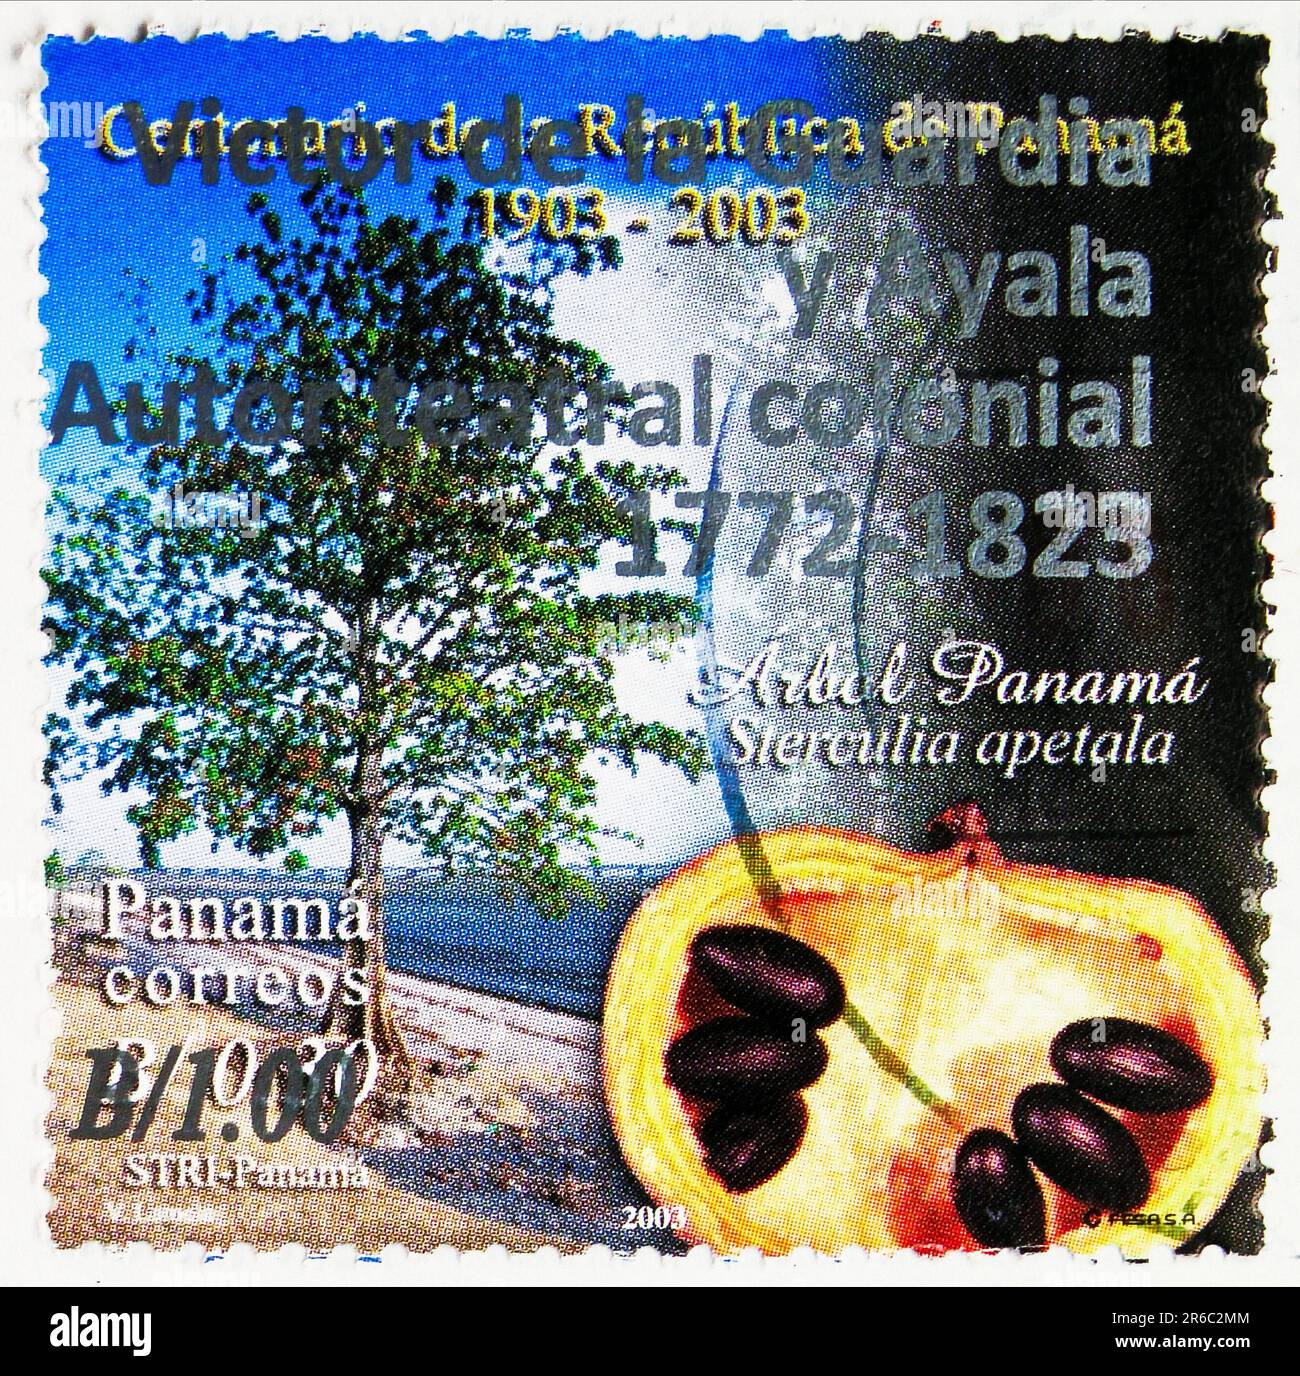 MOSCOU, RUSSIE - JUIN 3 2023: Timbre-poste imprimé au Panama montre Sterculia apetala, arbre national, série centenaire de la République du Panama, vers Banque D'Images